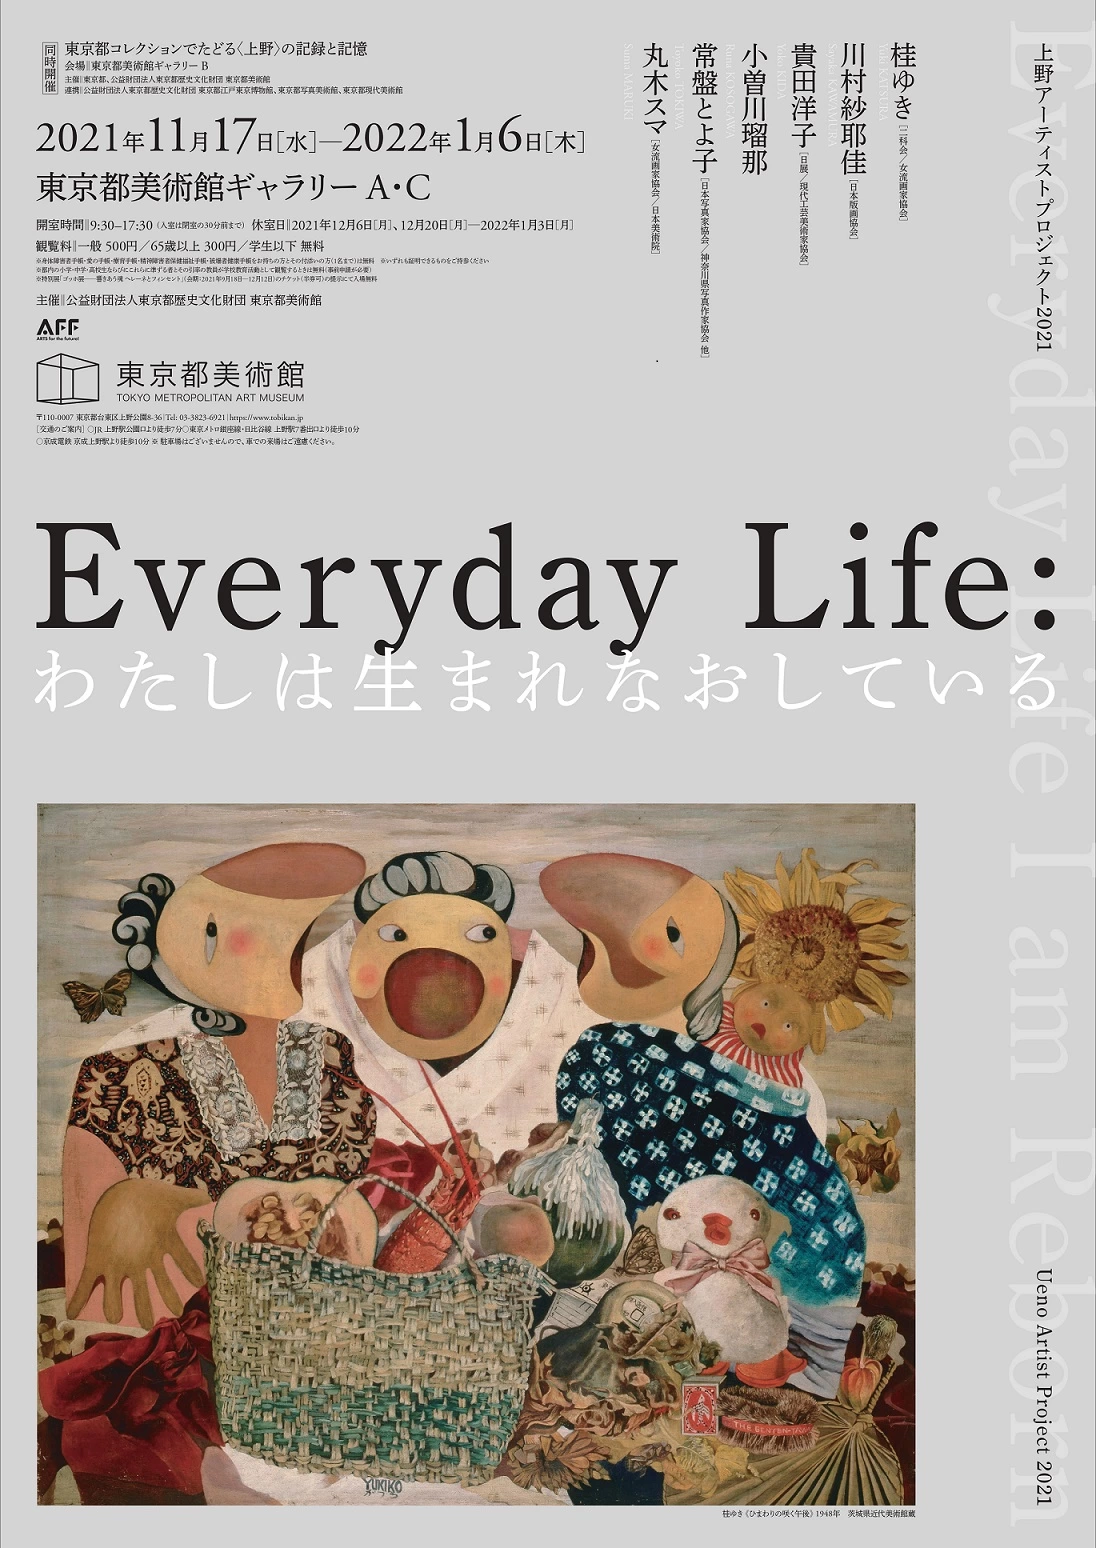 上野アーティストプロジェクト2021「Everyday Life わたしは生まれなおしている」